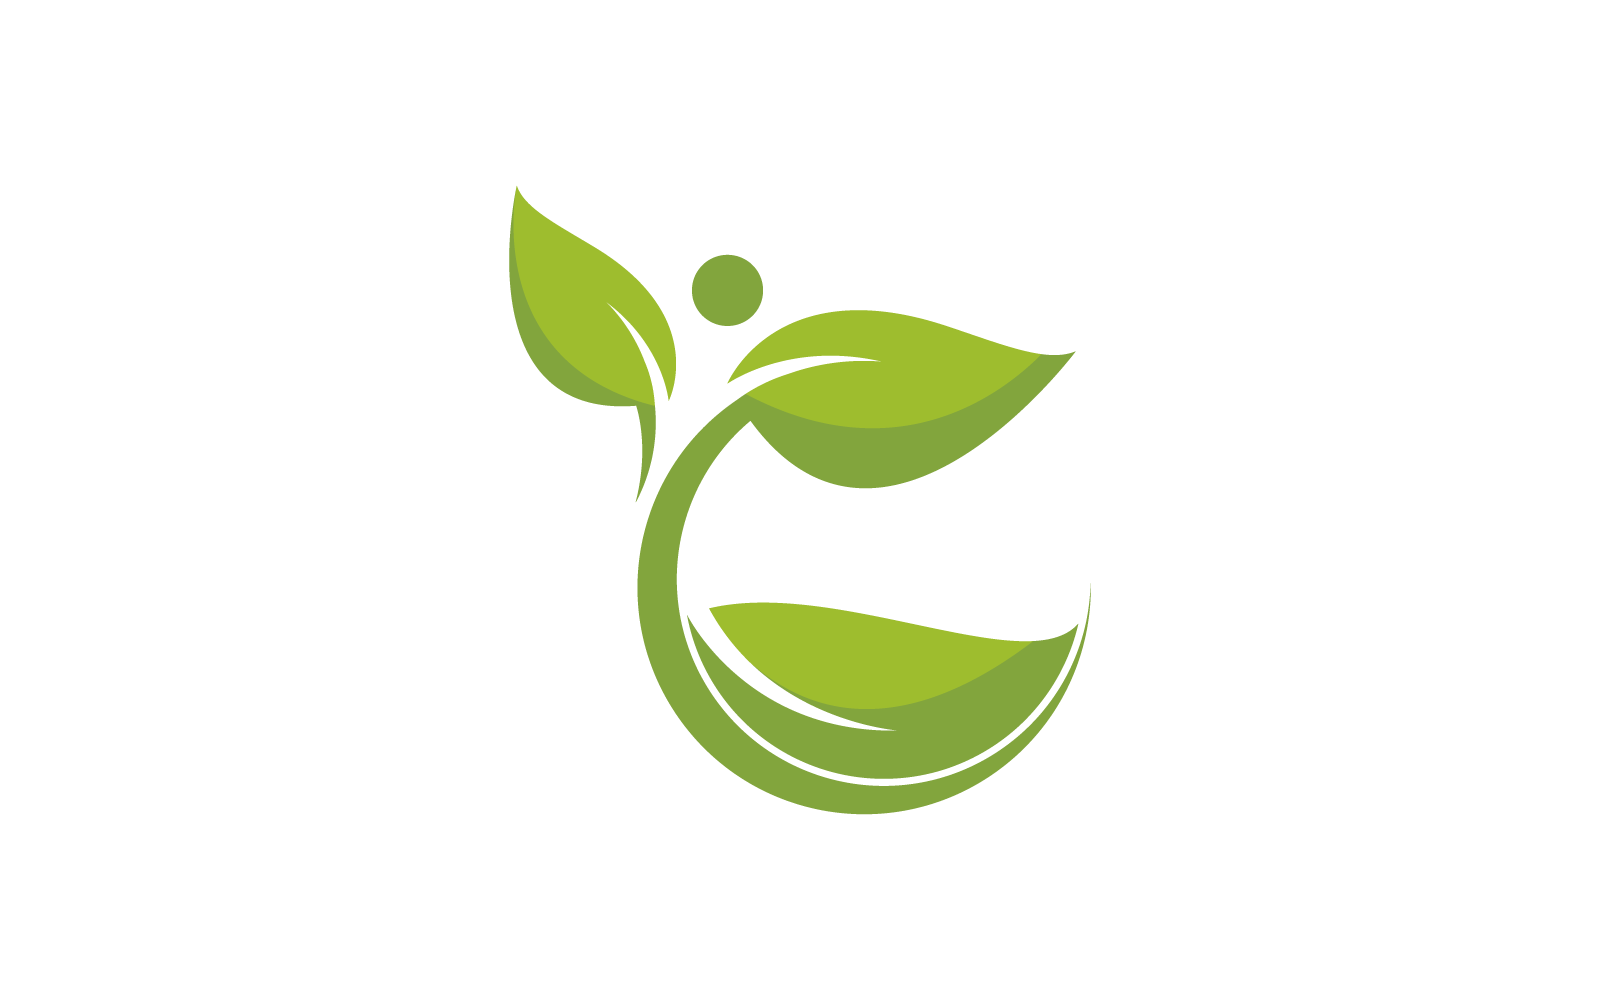 Green leaf logo illustration nature vector design Logo Template